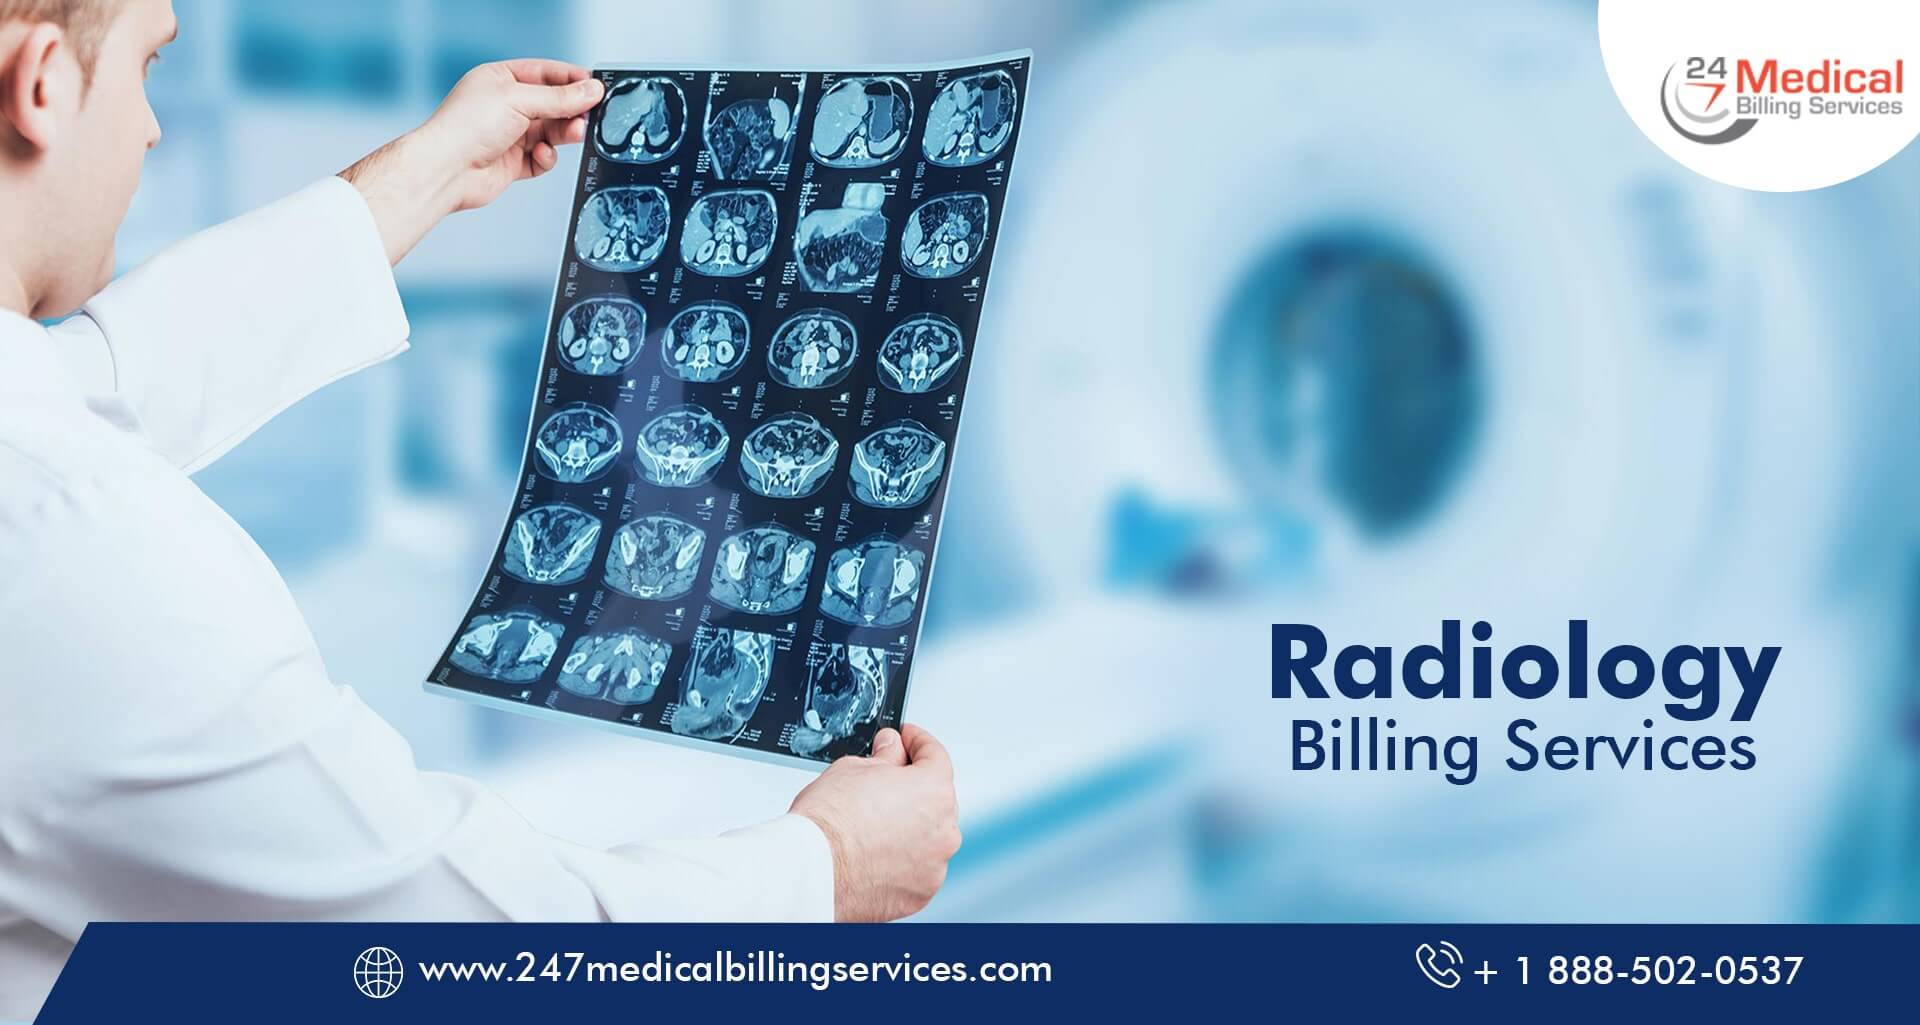  Radiology Billing Services in Mobile, Alabama (AL)